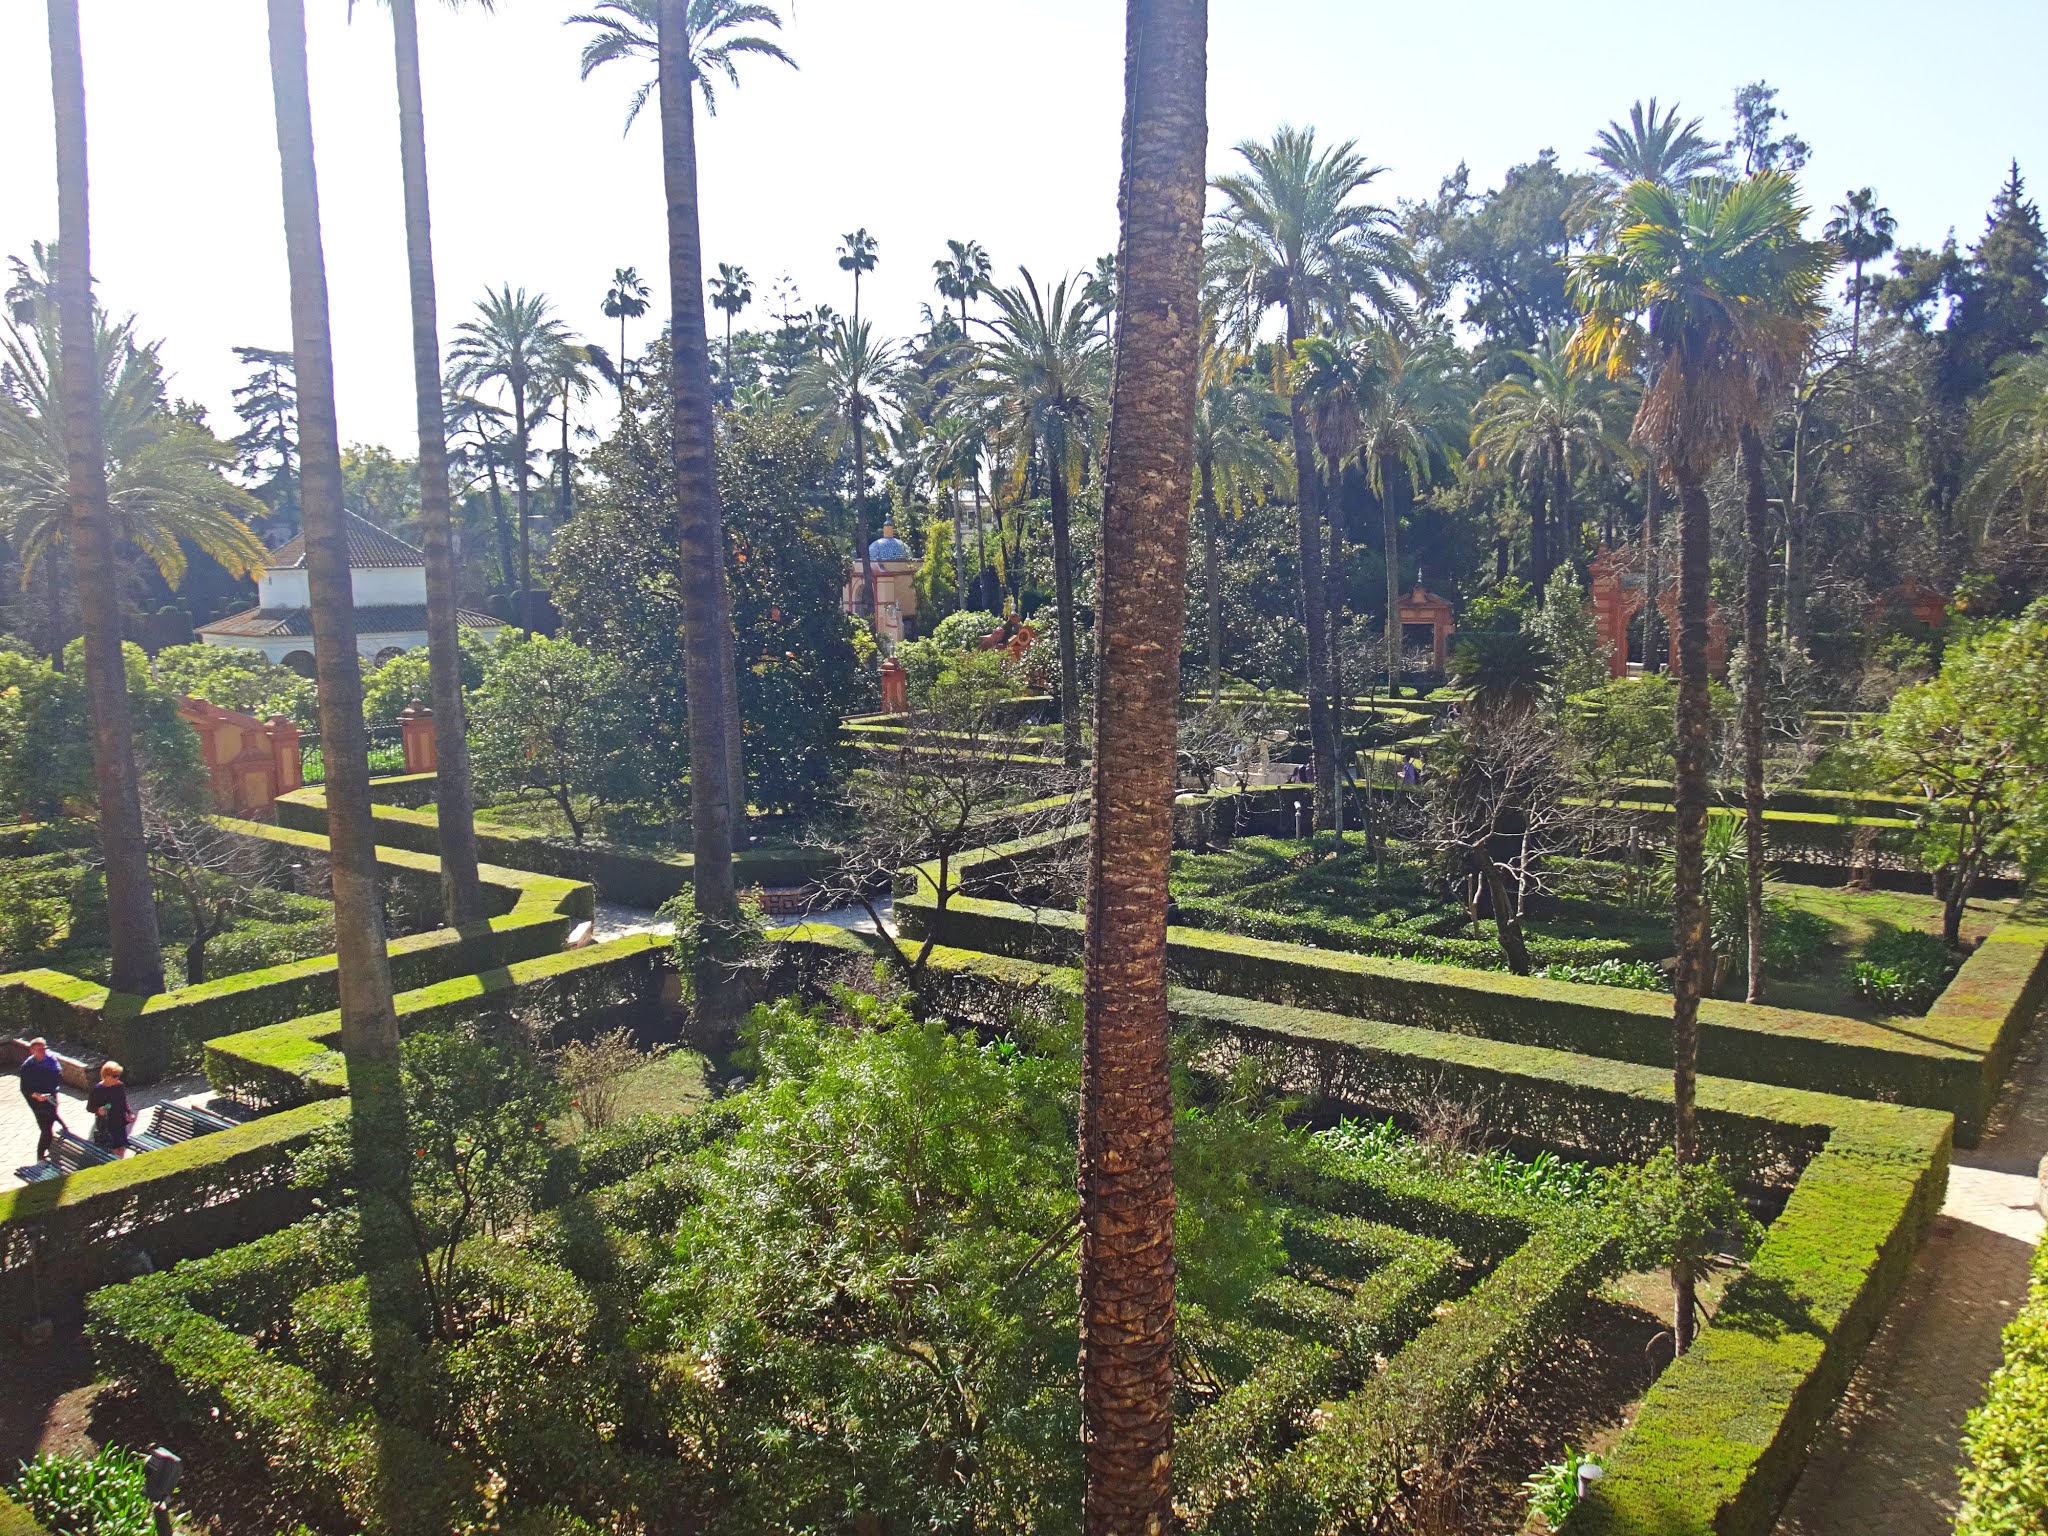 Jardines del Real Alcazar